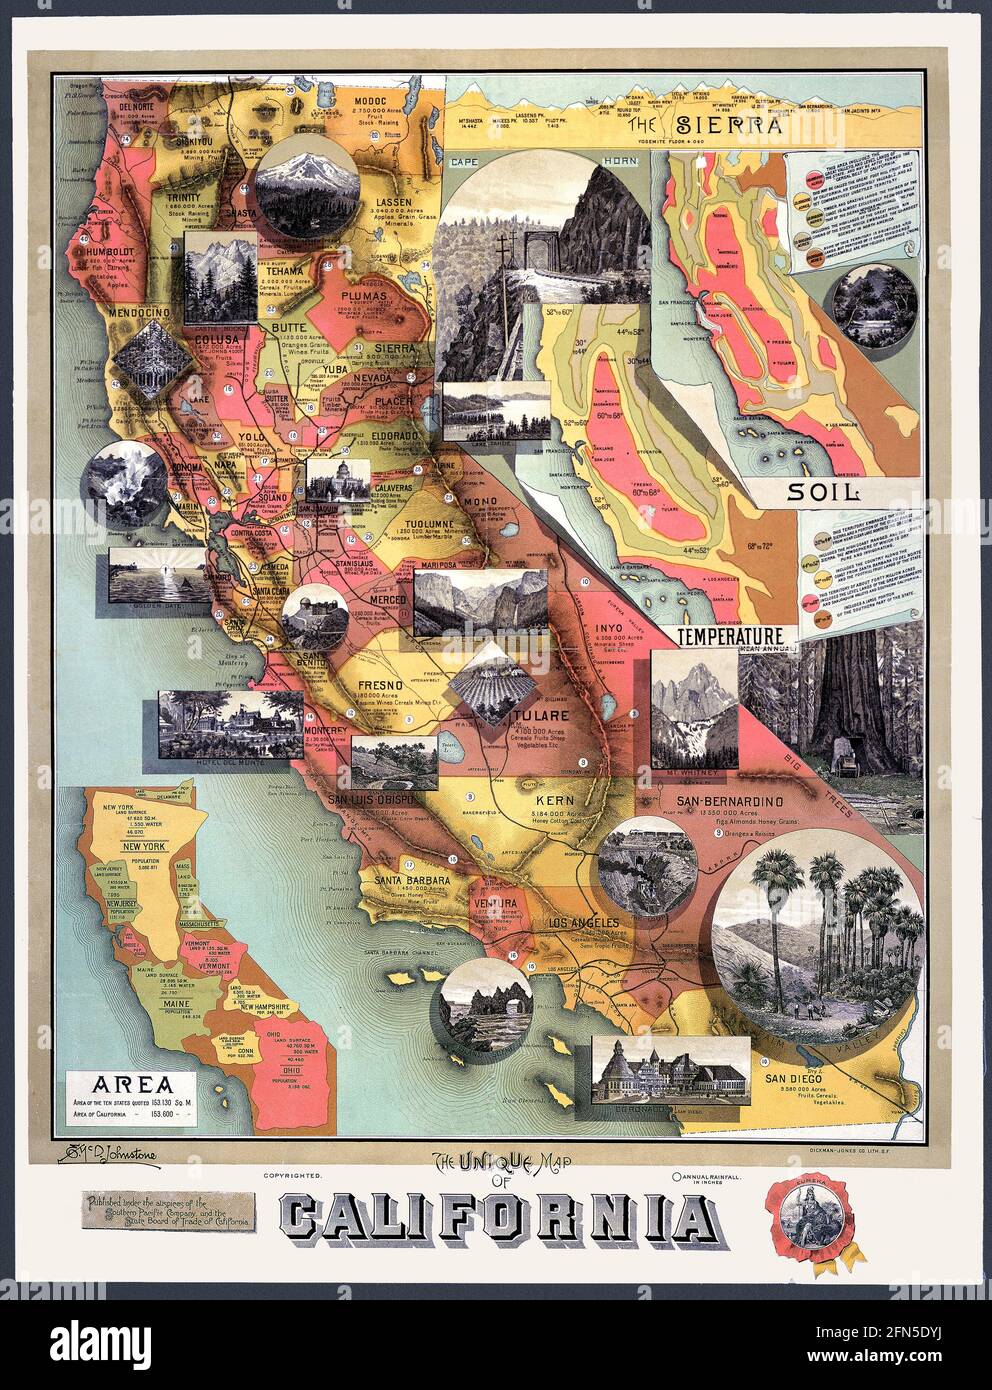 El viejo mapa de California publicado en 1890, patrocinado por un ferrocarril, da hechos interesantes. Insertar mapas proporciona información que incluye una que muestra el tamaño relativo de California comparado con otros estados. Otro muestra una sección transversal de las montañas de Sierra Nevada y la elevación de algunos de los picos. Las viñetas muestran imágenes clásicas de California. Foto de stock